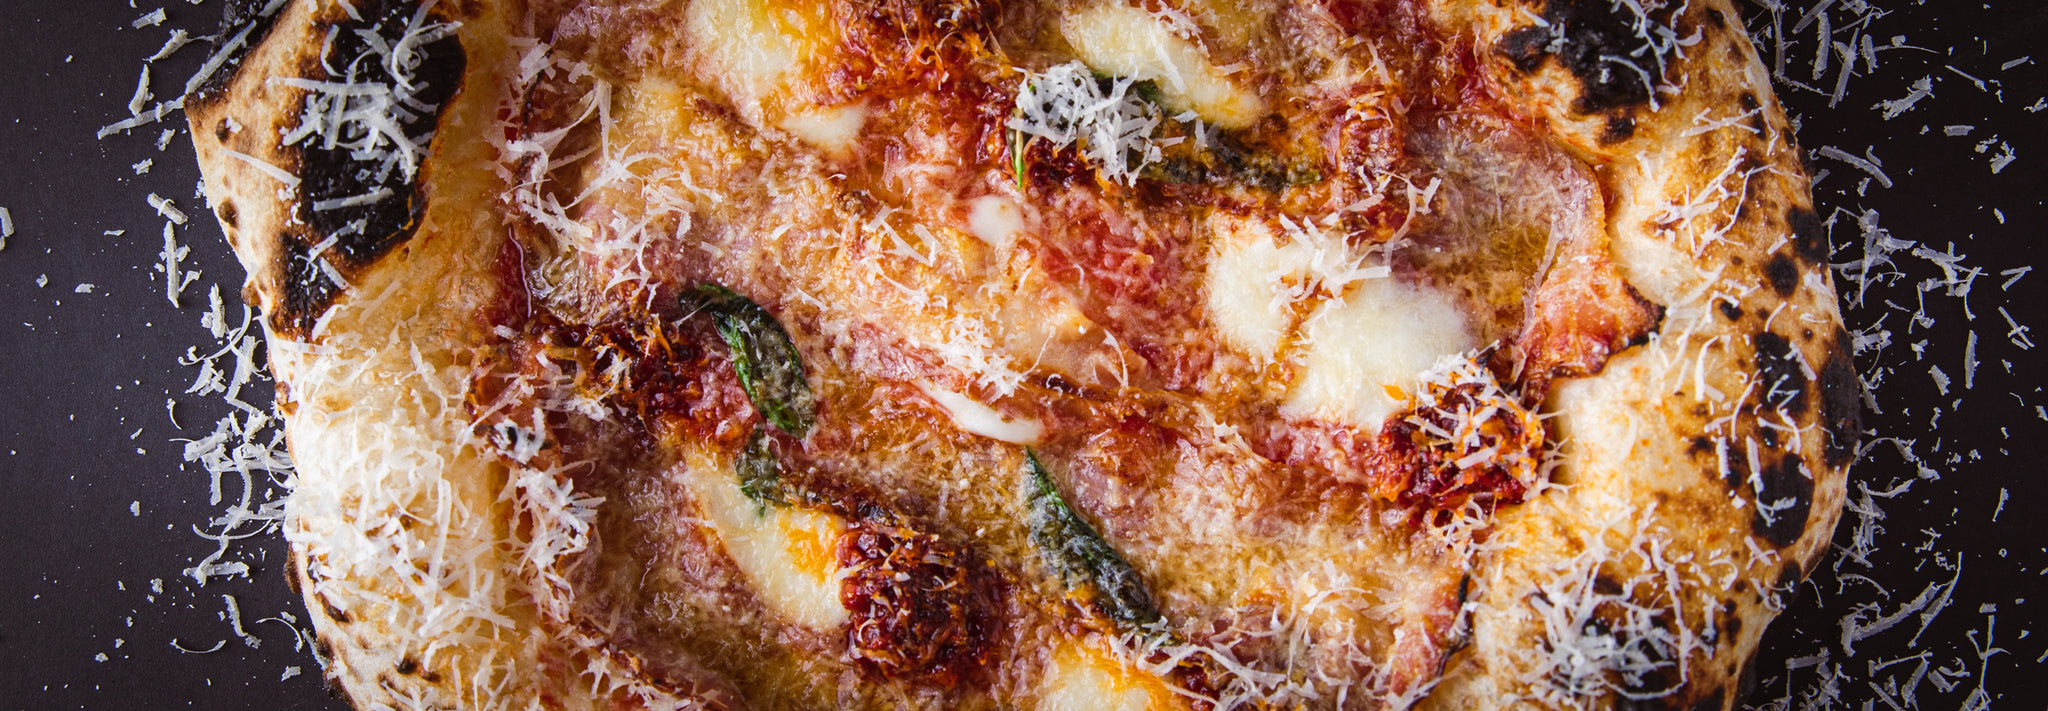 Pizza Calabrese Recipe | Gozney - Pizza oven